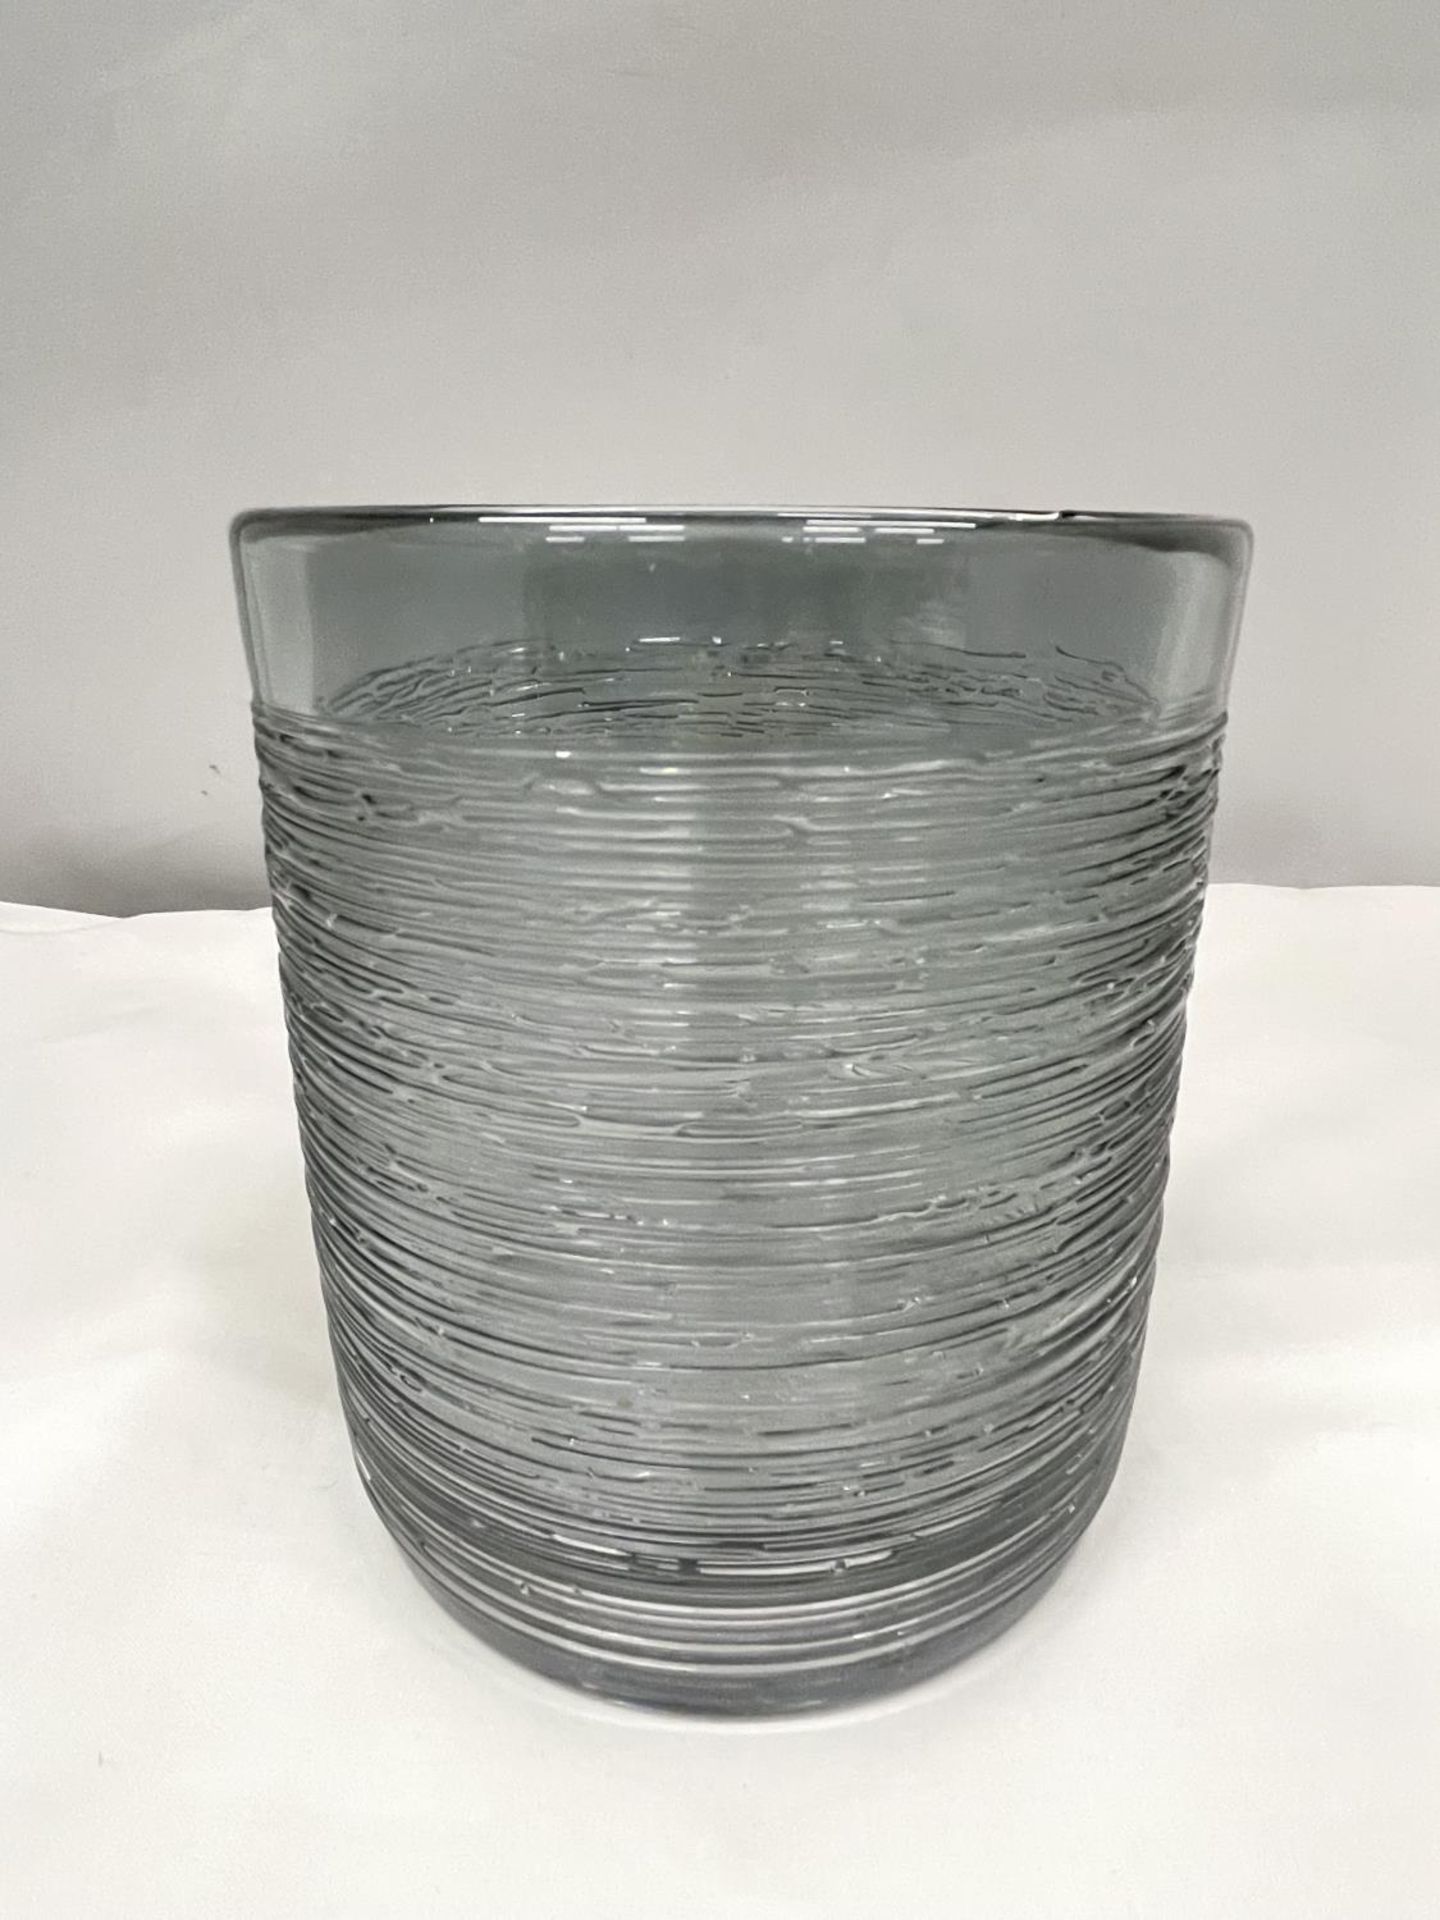 A SPUN GLASS VASE POSSIBLY BY BENGT EDENFELDT 15CM HIGH